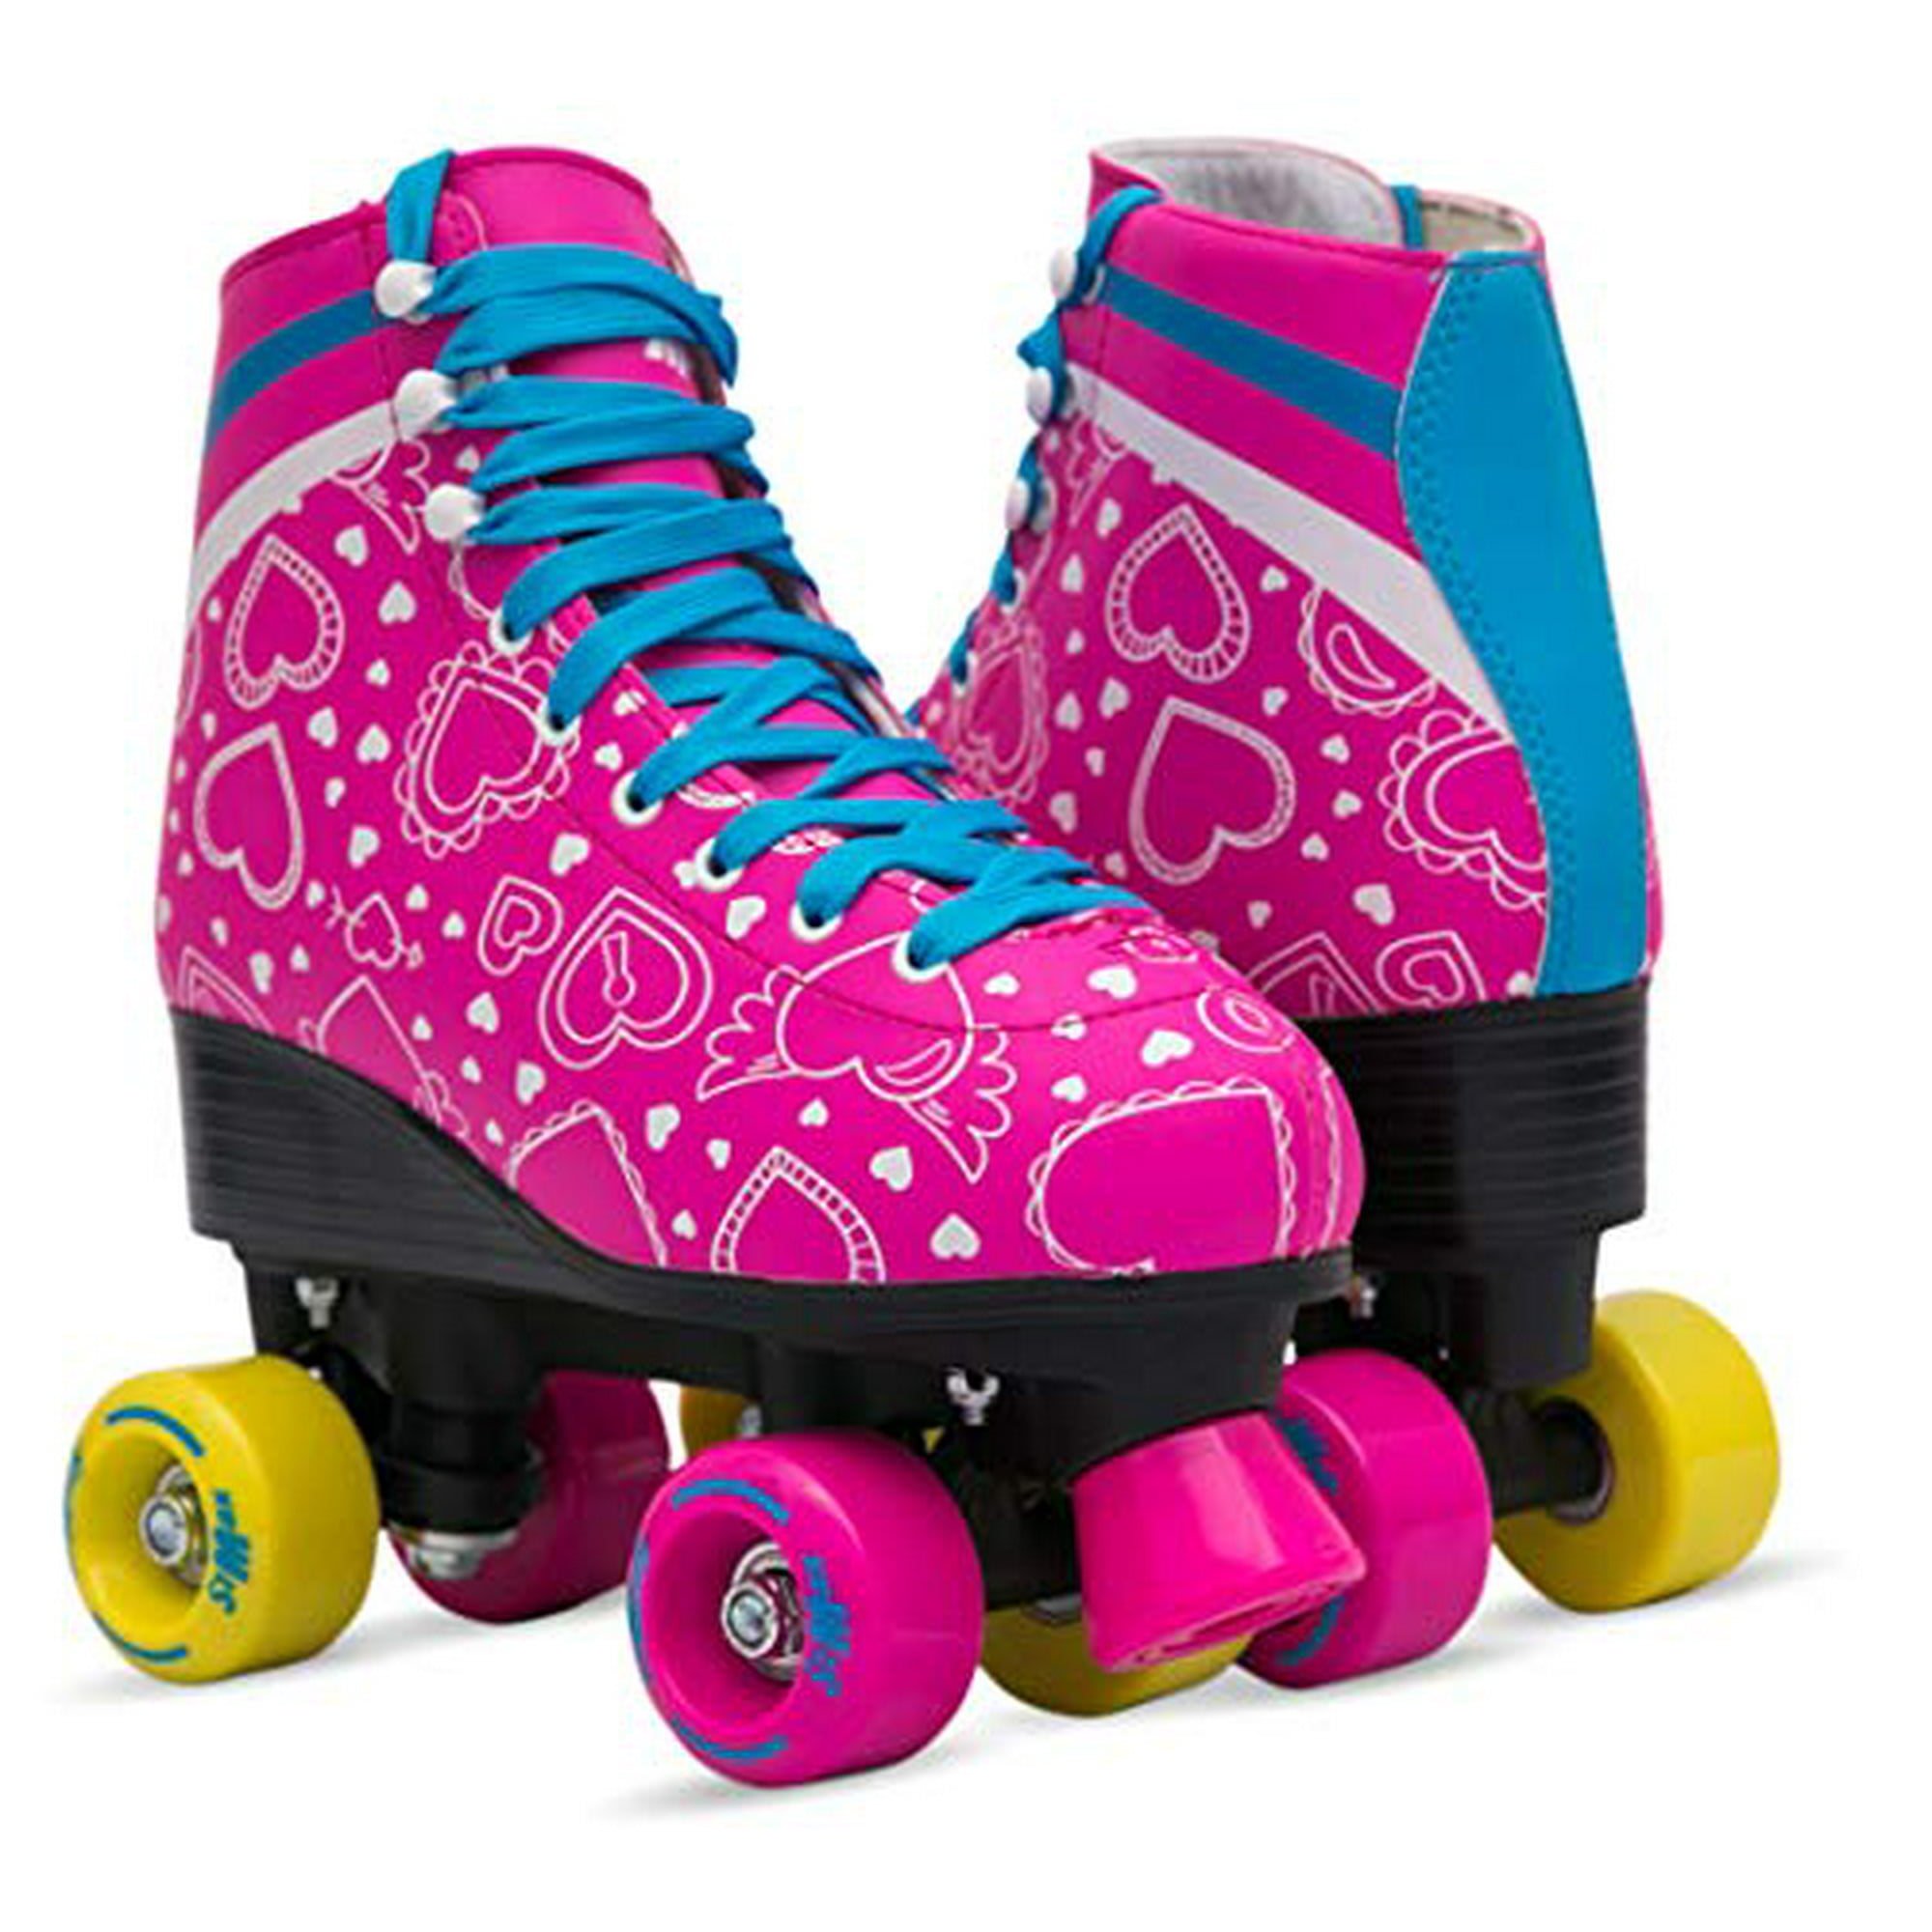 Roller Skates Size 5